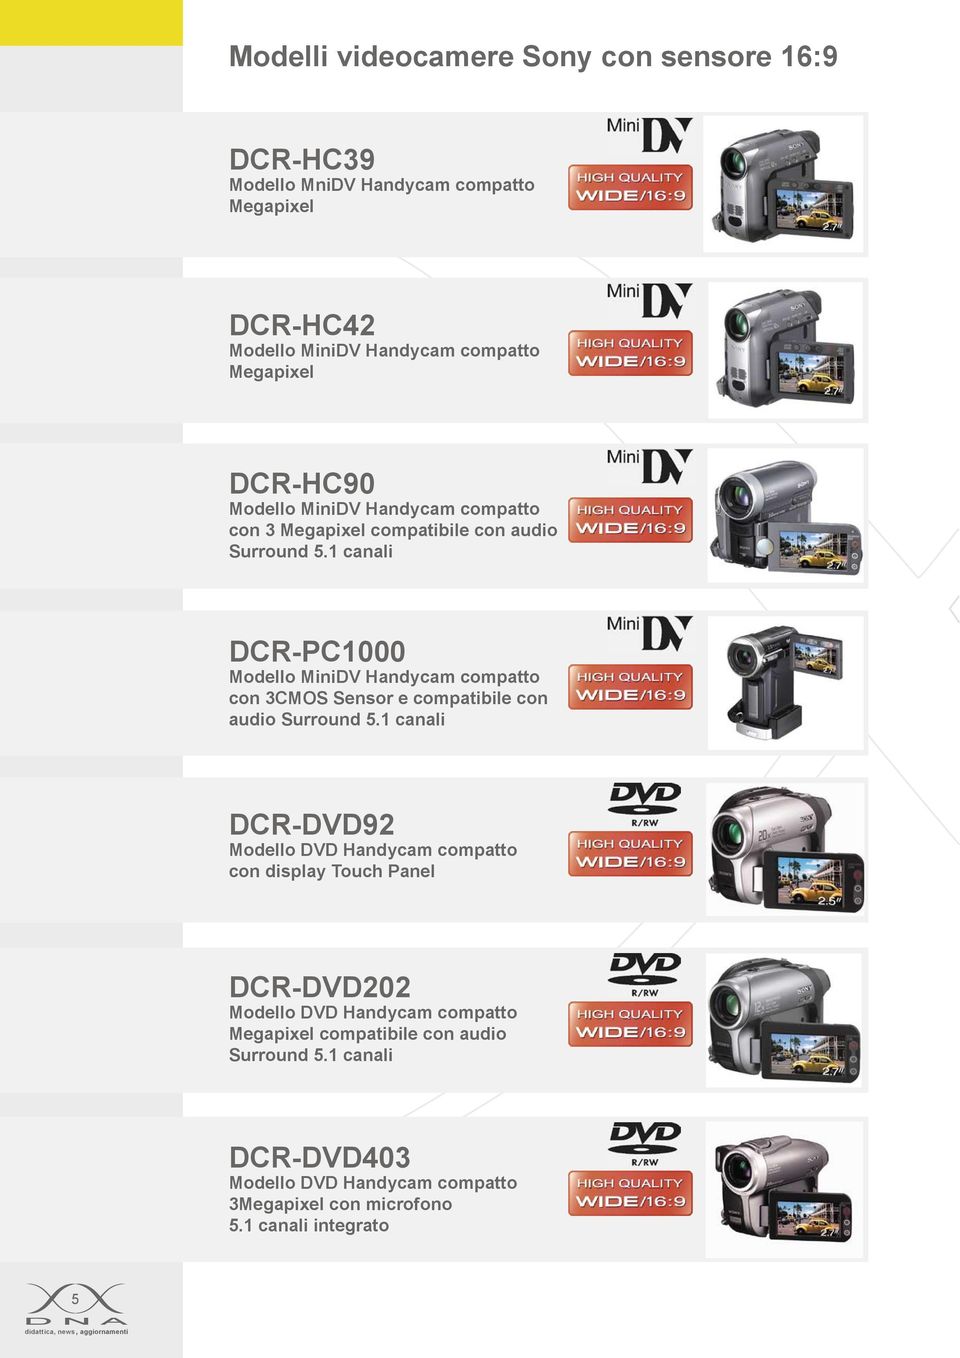 1 canali DCR-PC1000 Modello MiniDV Handycam compatto con 3CMOS Sensor e compatibile con audio Surround 5.